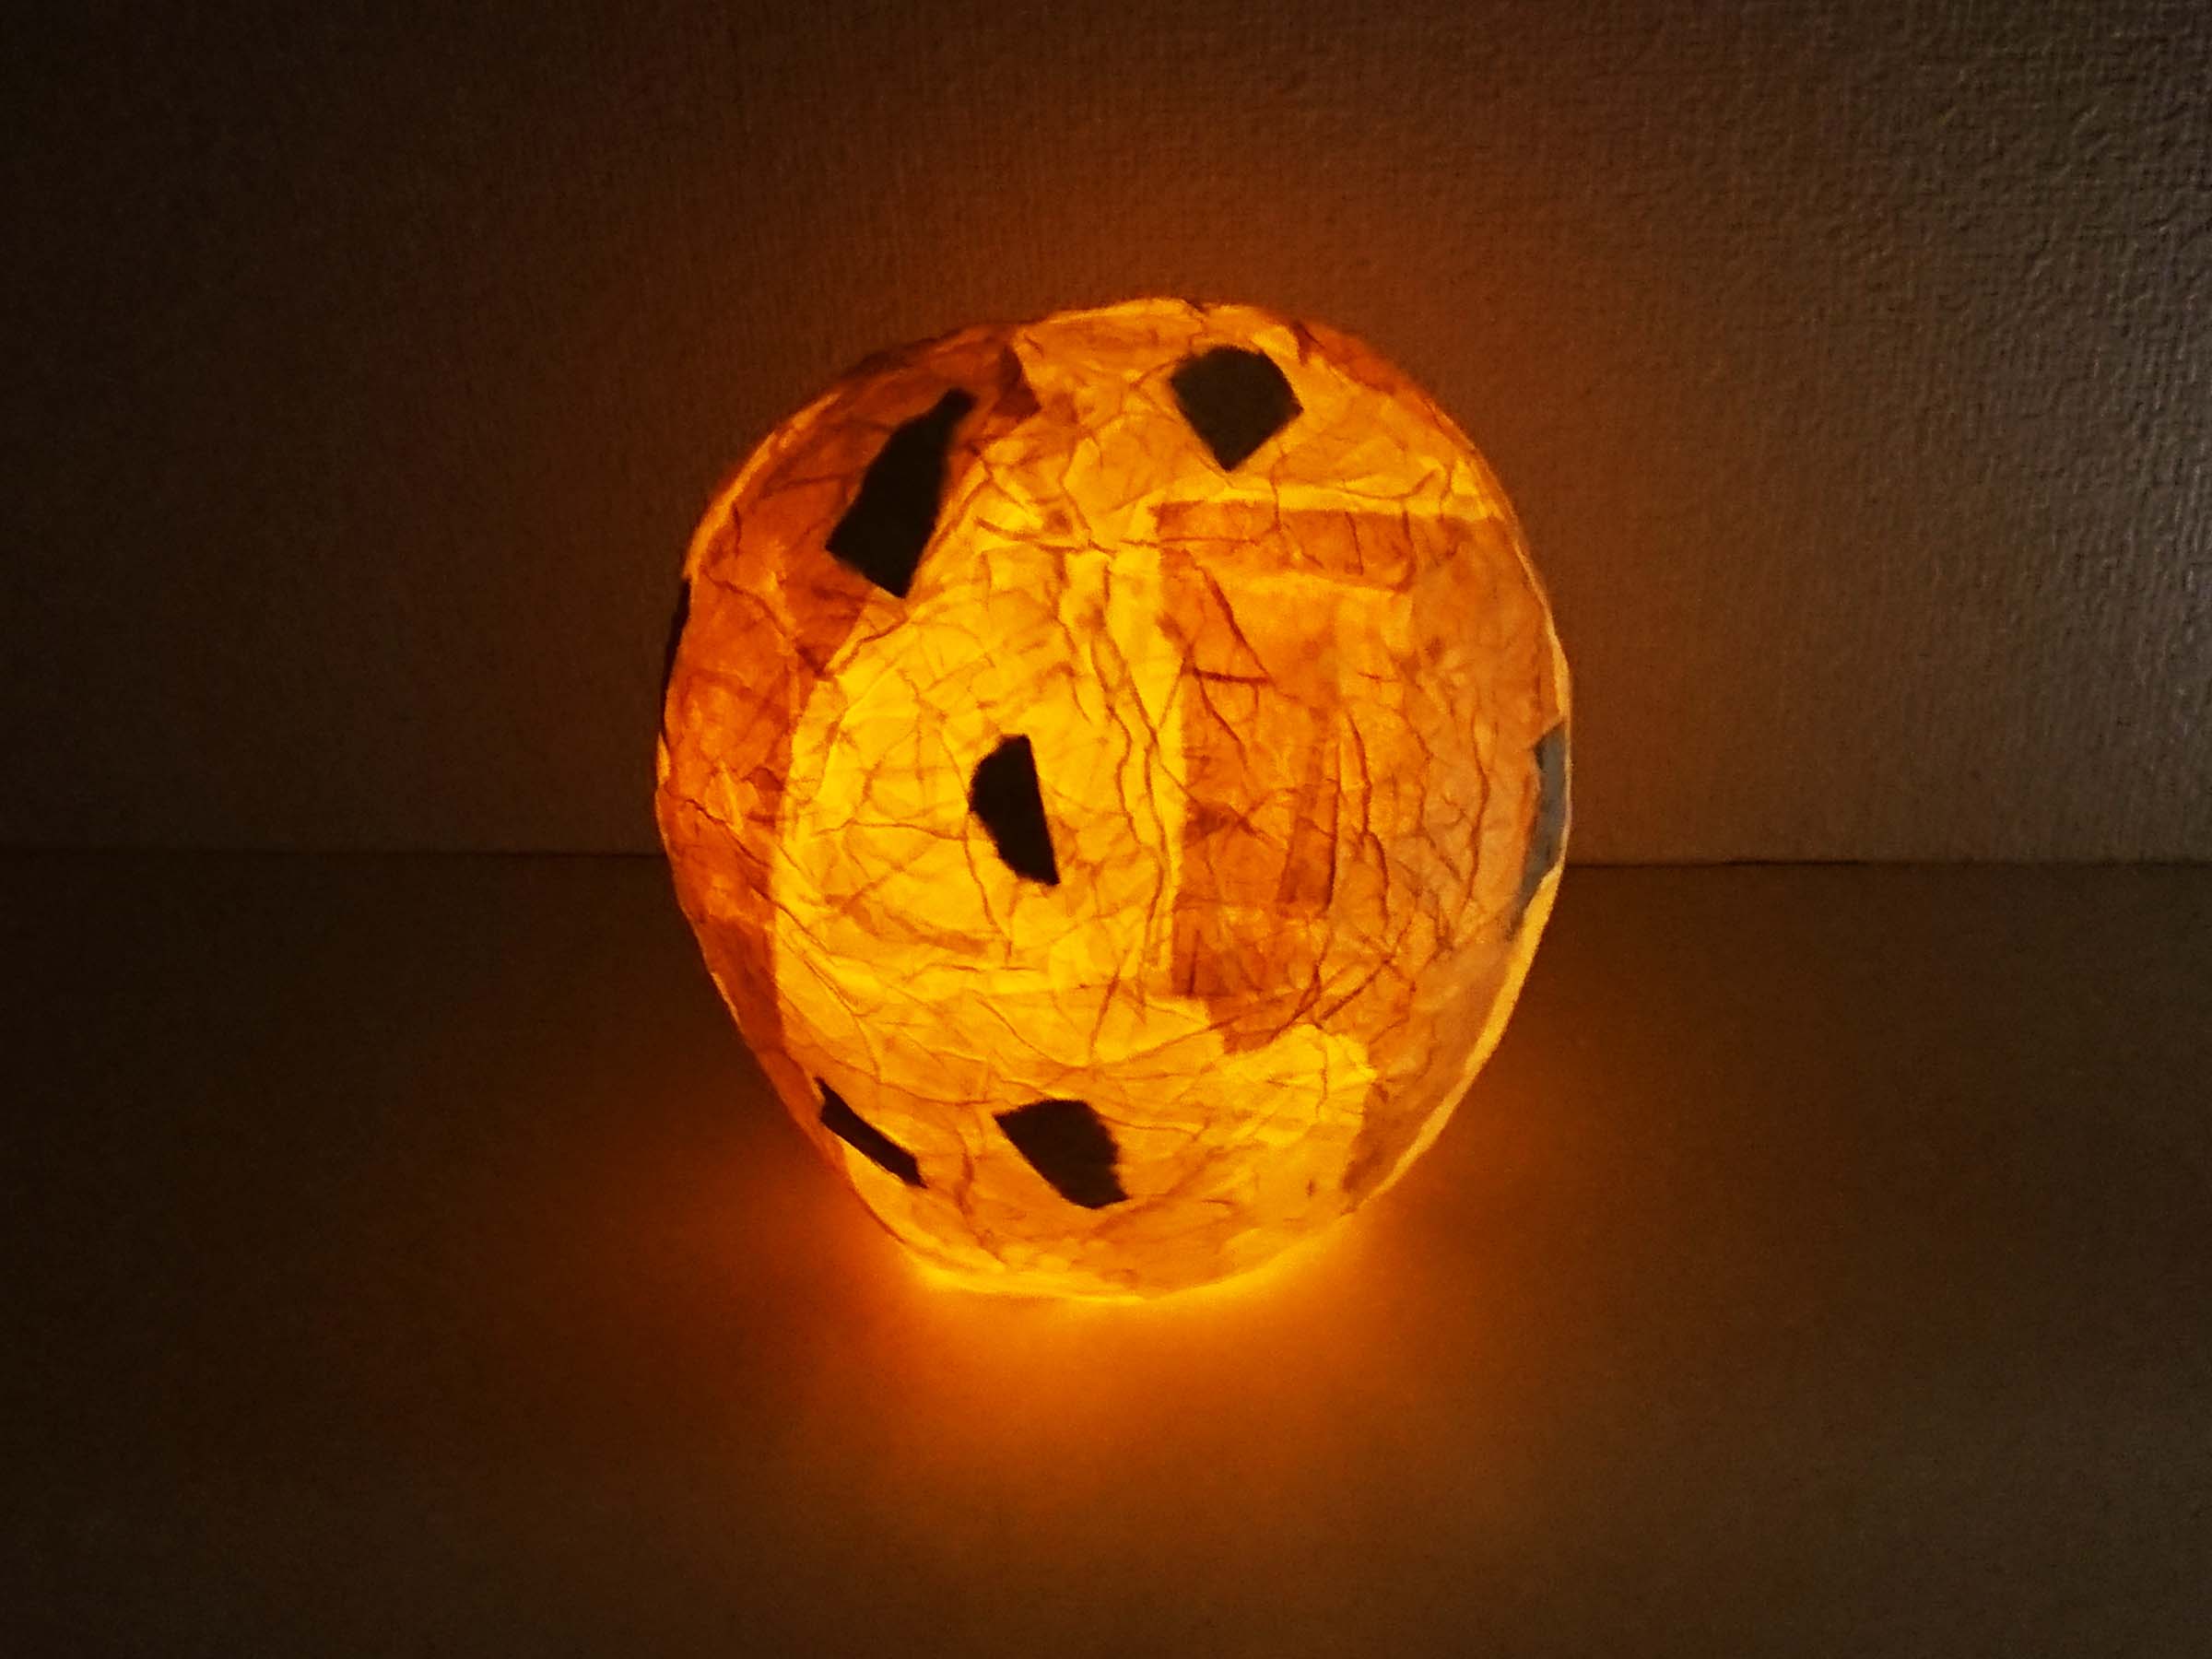 記事 ランプシェードを手作り 和紙を貼って自作地球儀型ランプの作り方 アートクリエイター 子供絵画工作専門家かまゆみのアートな生活